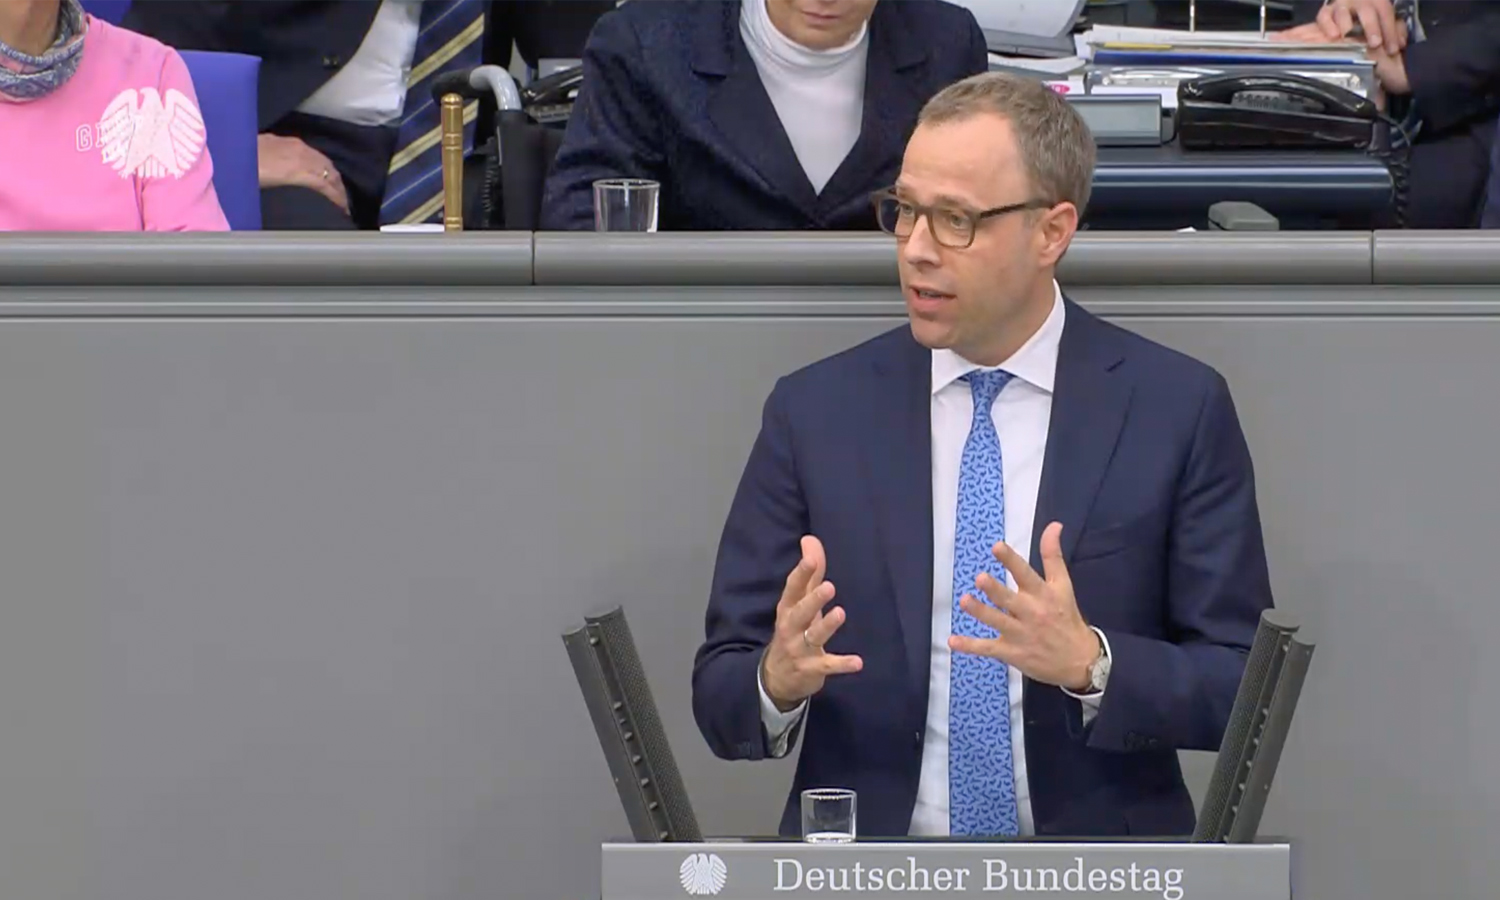 In meiner gestrigen Rede im Deutschen Bundestag habe ich eine zukunftsorientierte Strategie für Ostdeutschland skizziert.